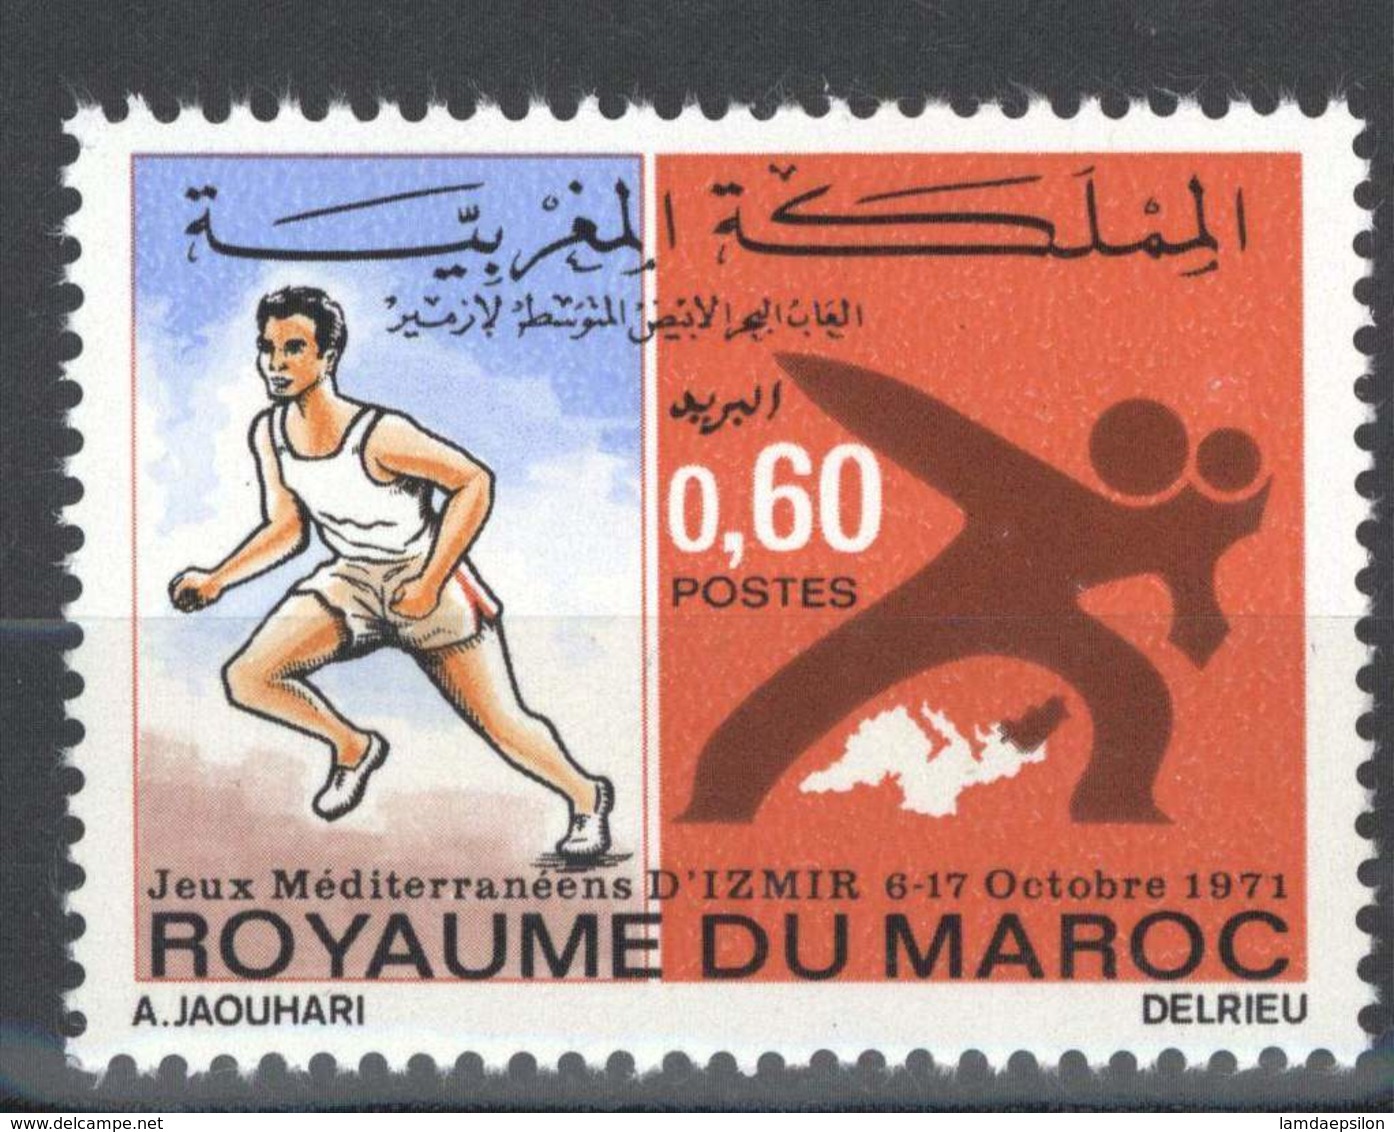 MOROCCO JEUX MEDITERRANEENS IZMIR TURQUIE ATHLETISME SPORT 1971 - Morocco (1956-...)